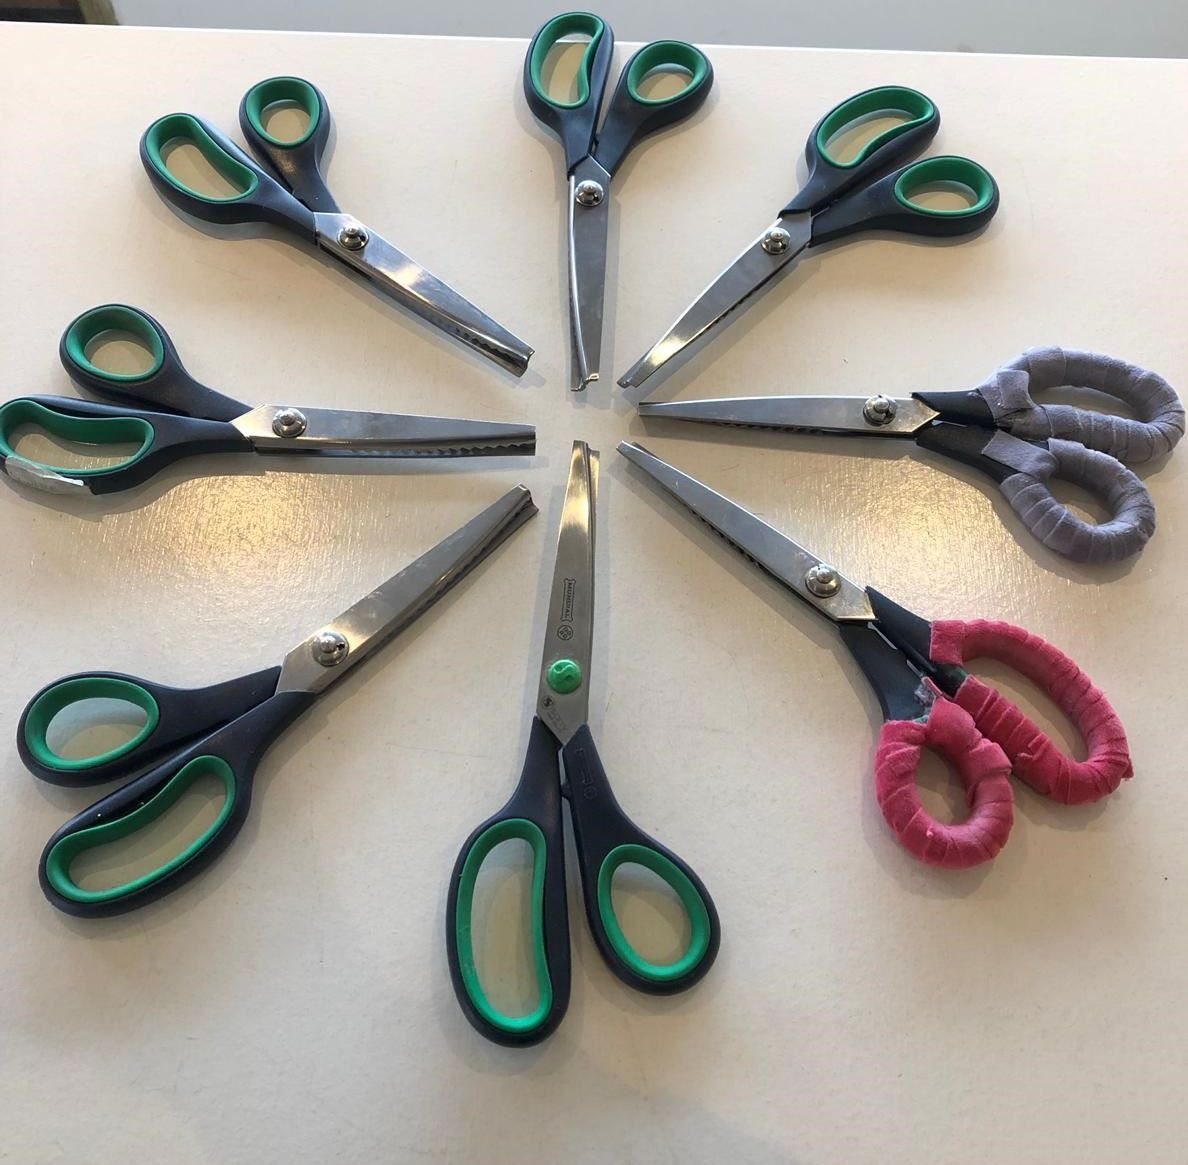 scissors sharp